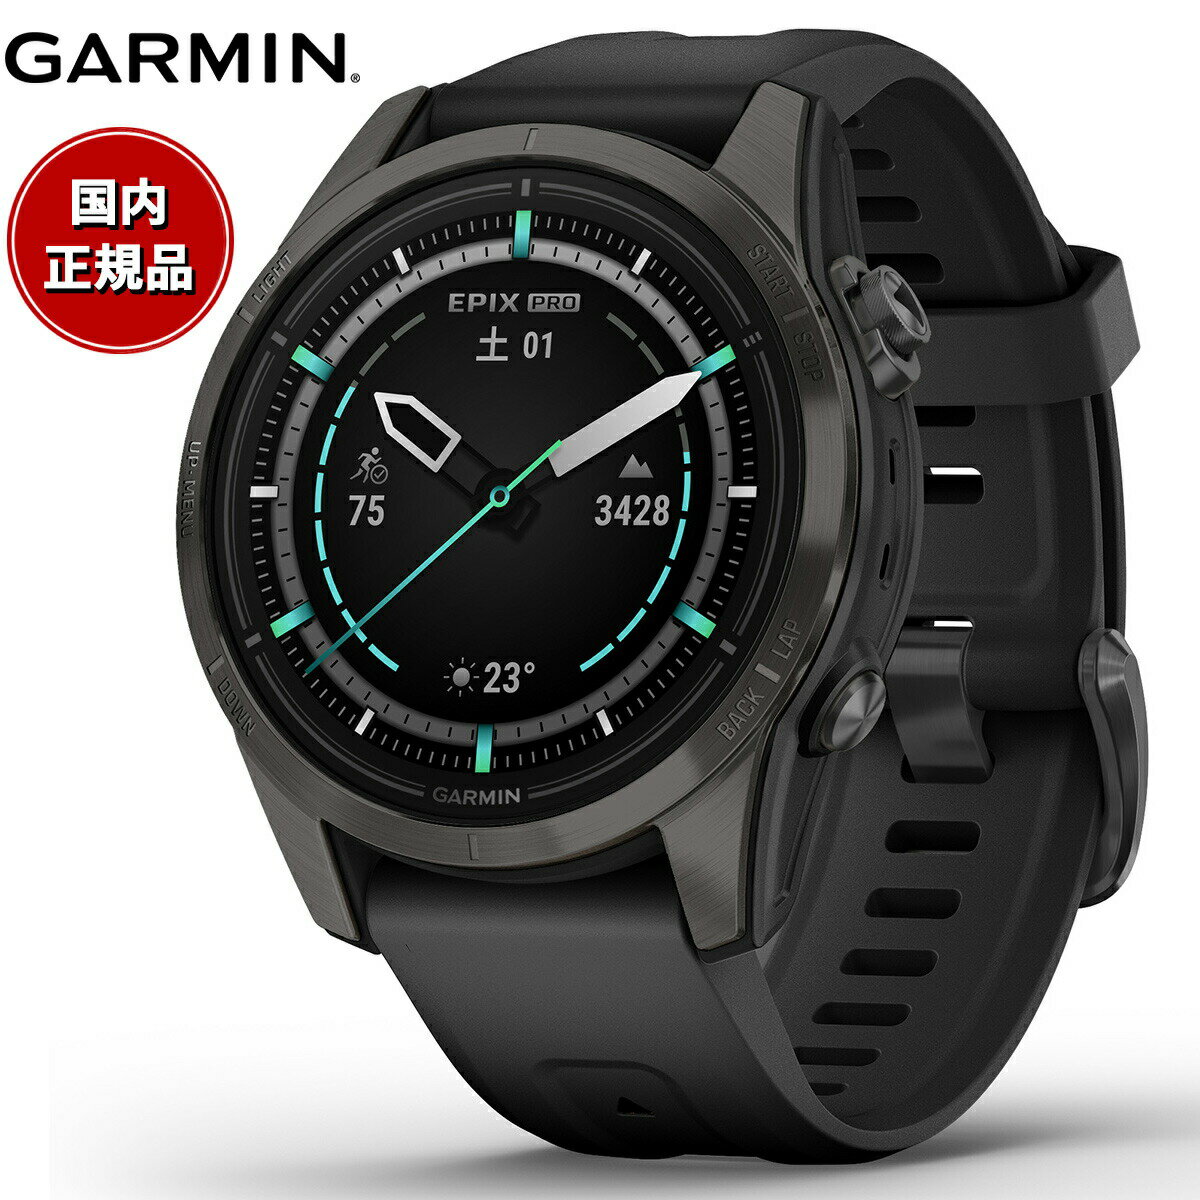 【24回分割手数料無料 】ガーミン GARMIN epix Pro Gen 2 42mm Sapphire エピックス プロ サファイヤ 010-02802-36 Ti Carbon Gray DLC / Black GPS スマートウォッチ 腕時計